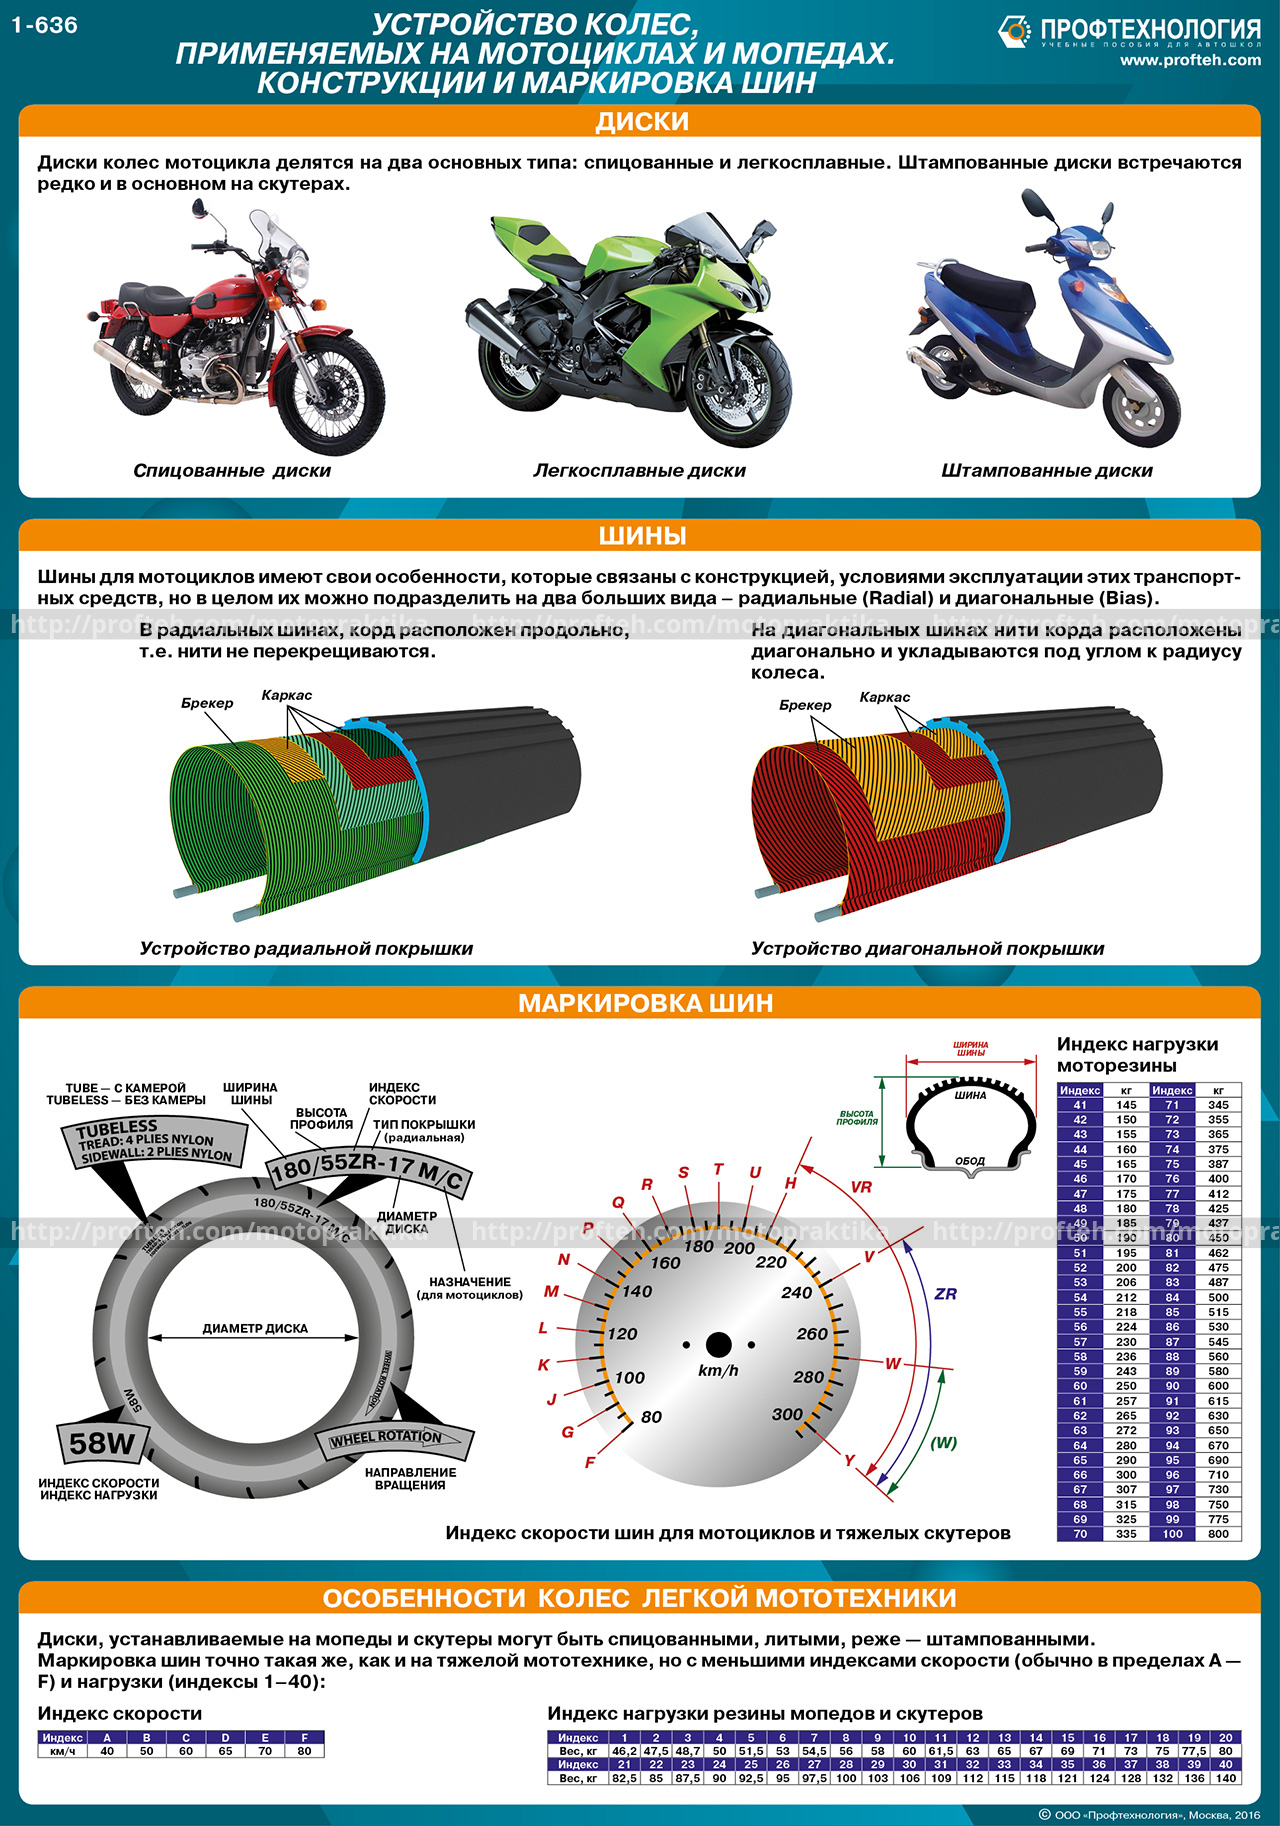 Как определить Размерность резины мотоцикла. Таблица размеров покрышек мотоцикла. Параметры мото камер и покрышек таблица. Таблица размеров камер для колес мотоциклов.